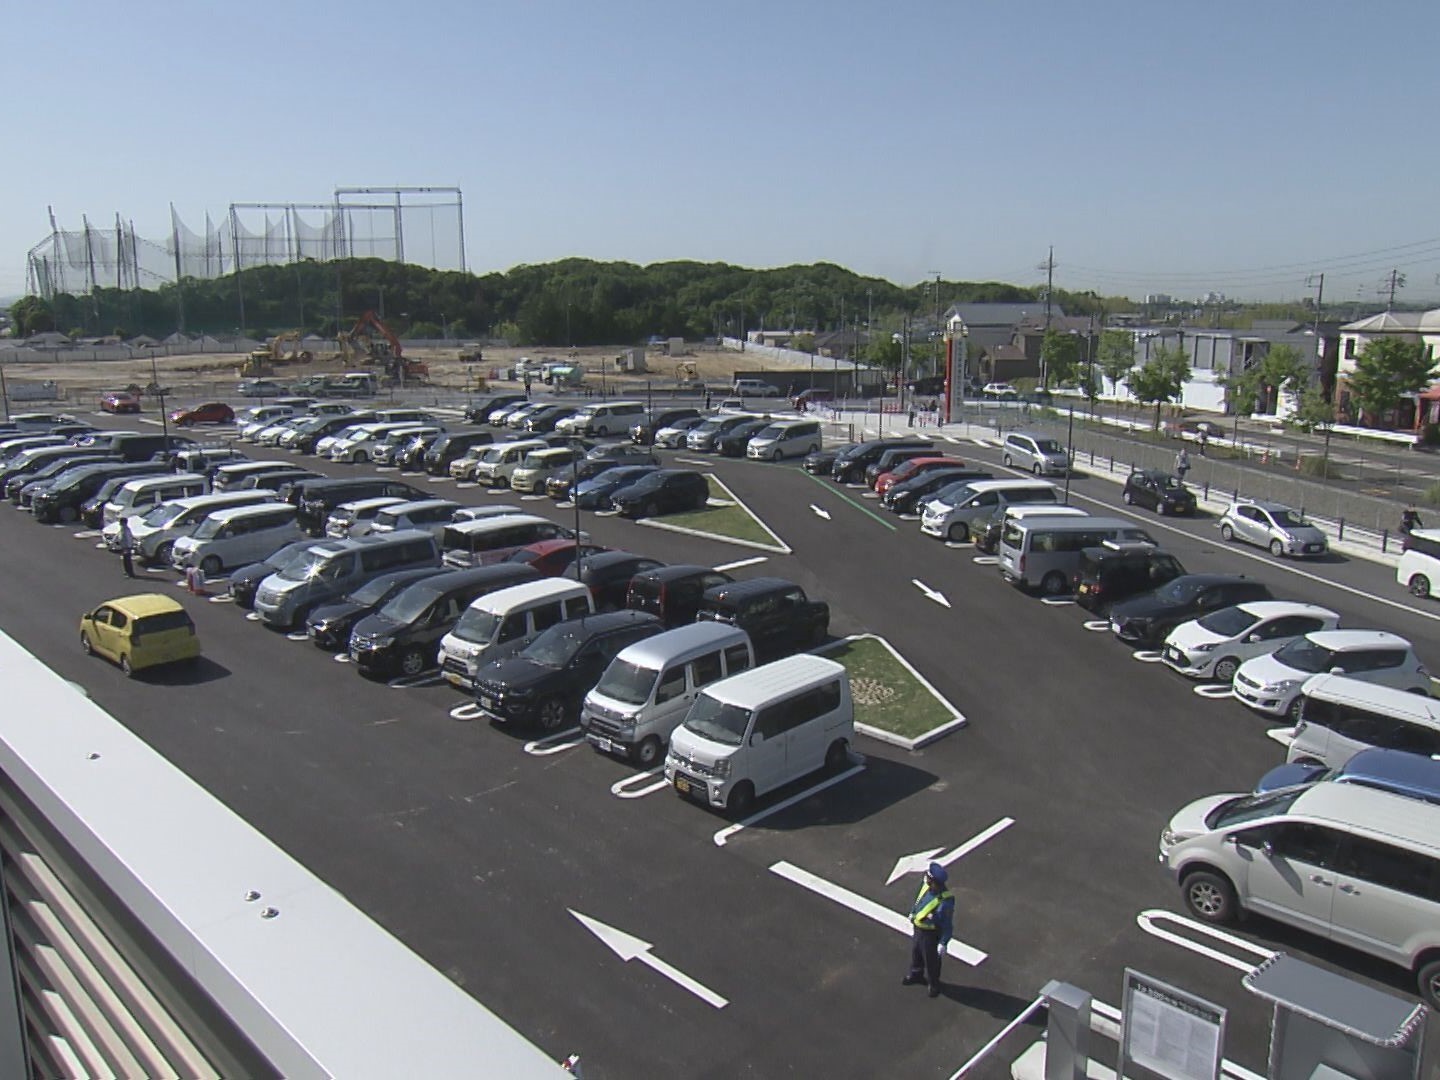 無料から1回500円に 名古屋 平針運転免許試験場に新たな駐車場完成 立体 平面計約700台分 東海テレビnews